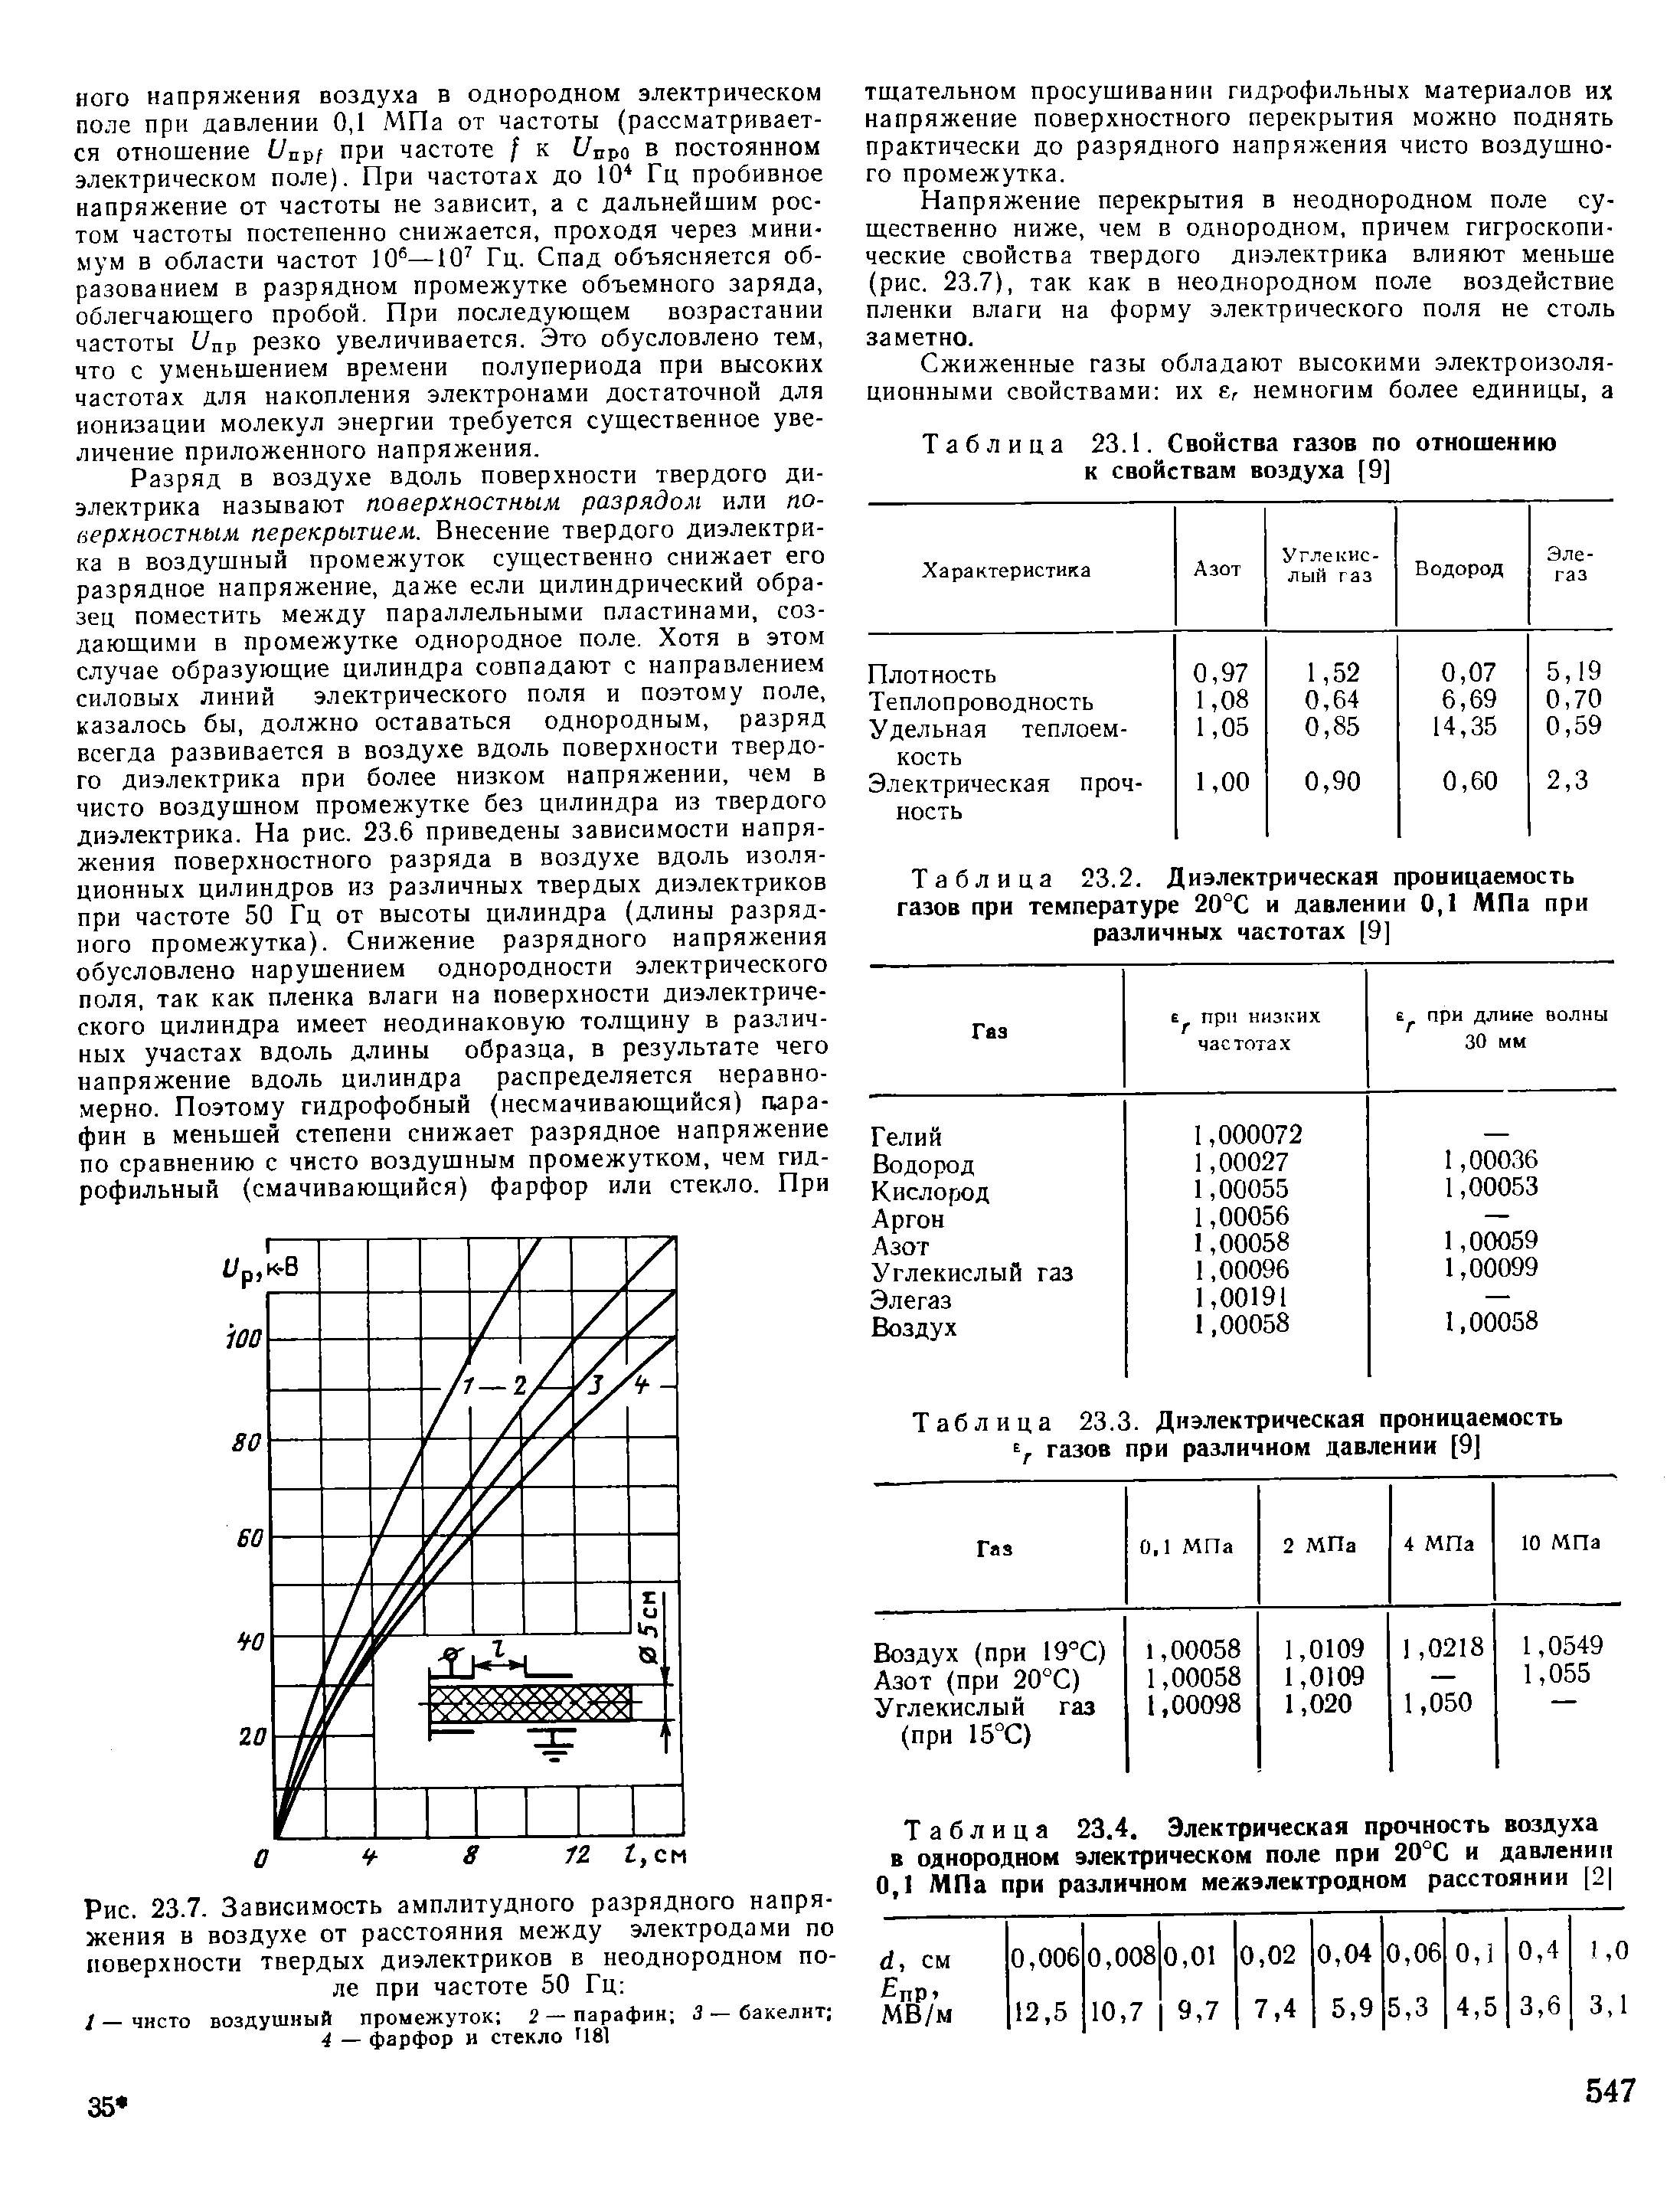 Таблица 23.3. Диэлектрическая проницаемость газов при различном давлении [9]
